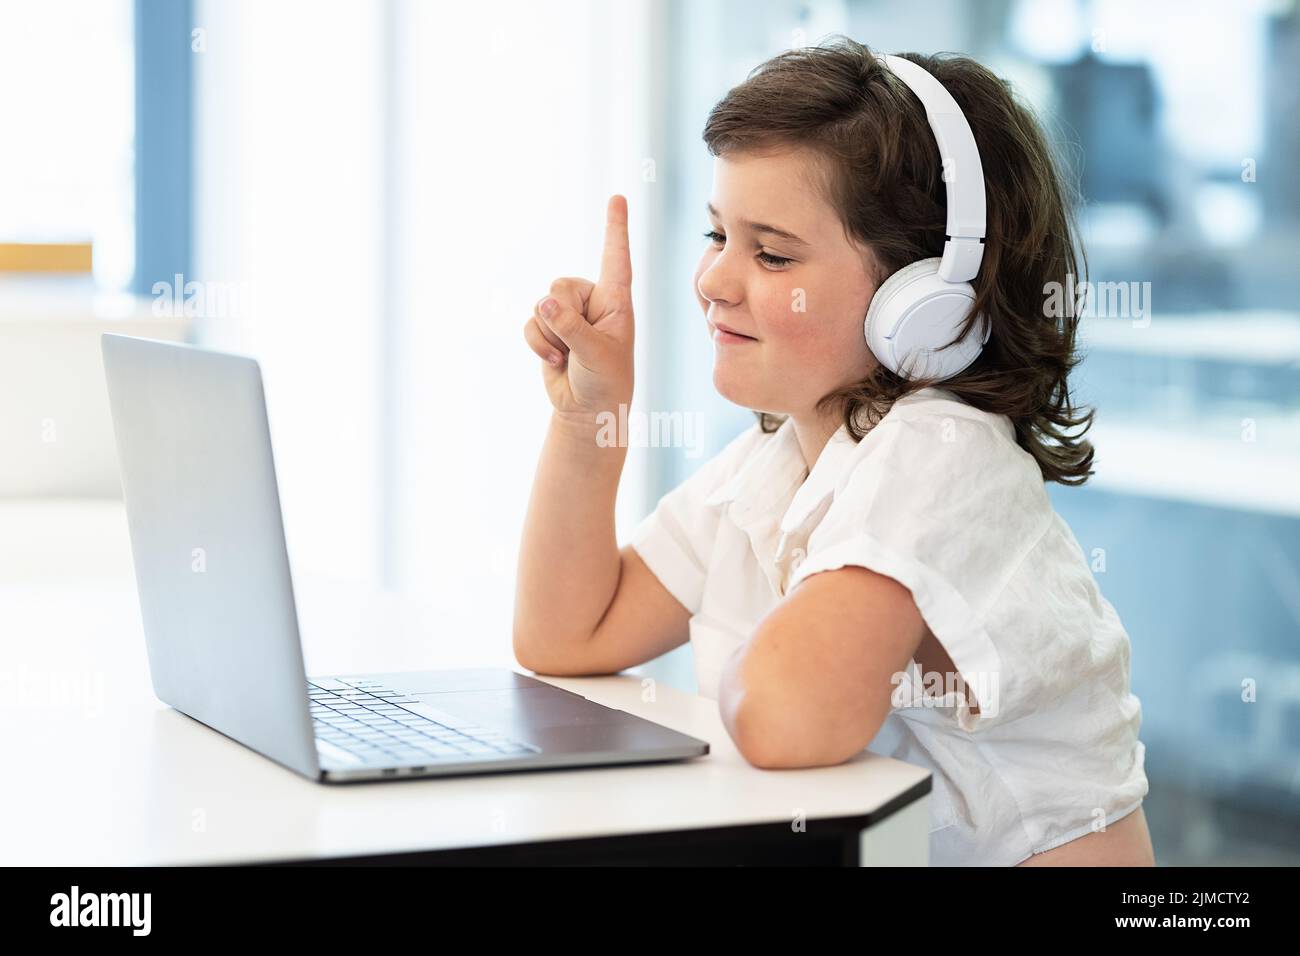 Vista lateral de la chica con auriculares en la cabeza sentada frente a un portátil durante el chat de vídeo despertando en la pantalla Foto de stock